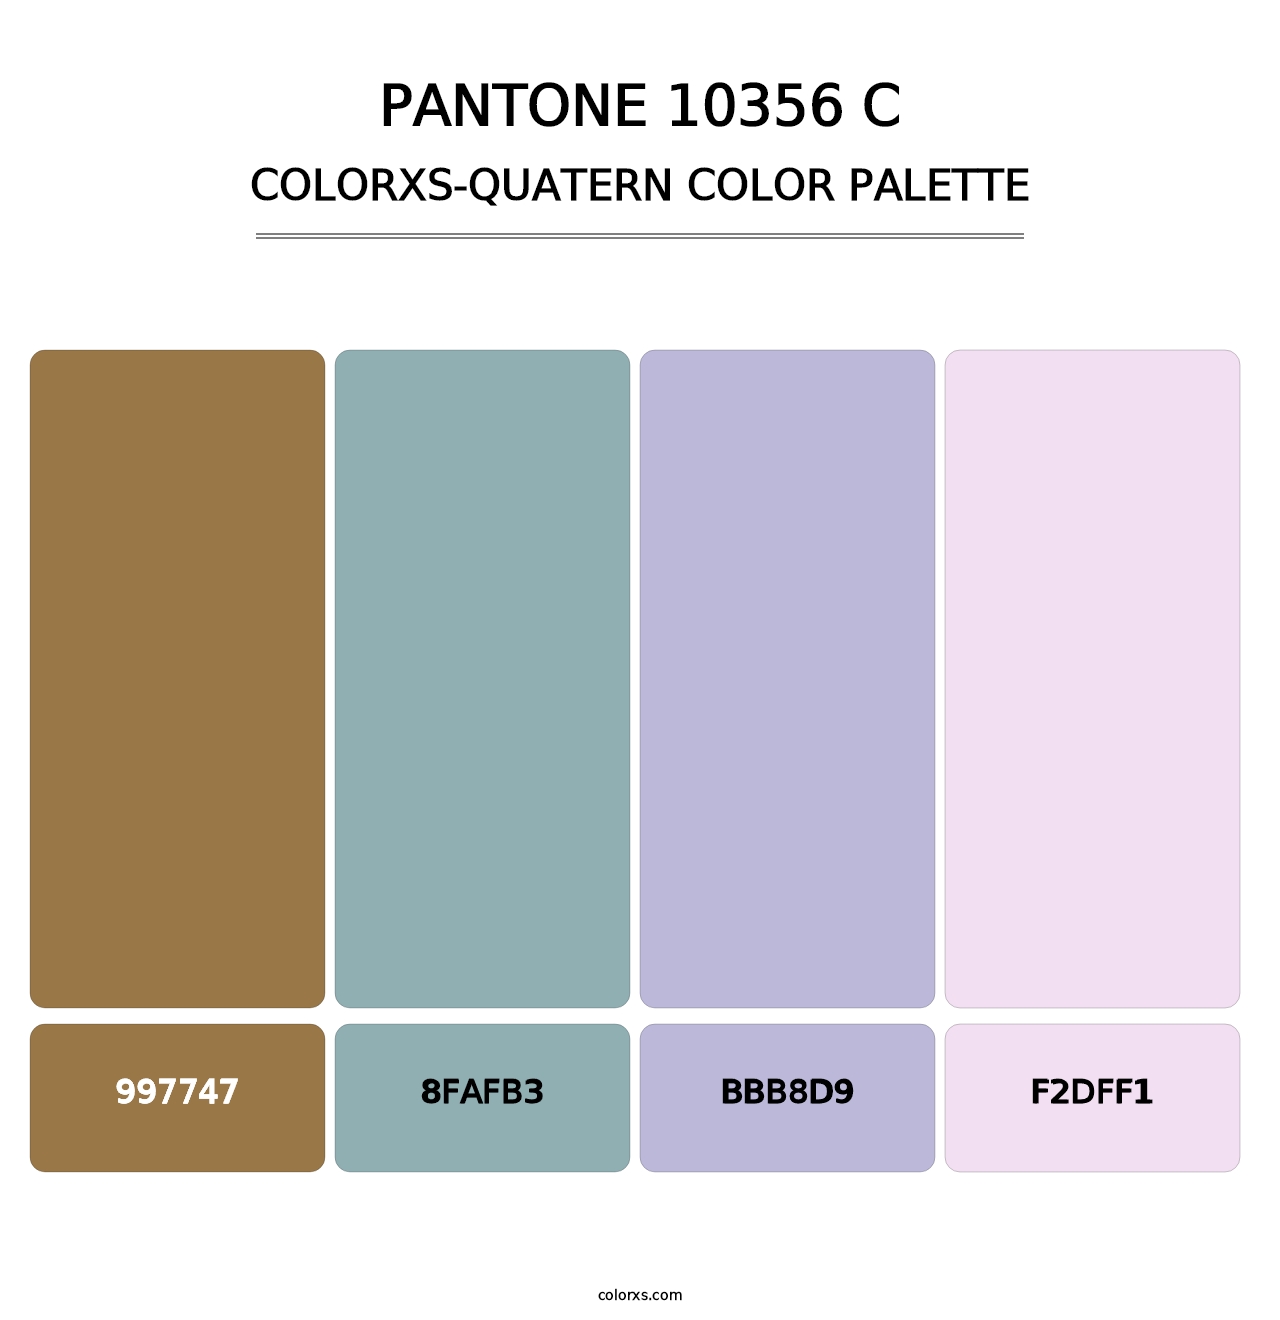 PANTONE 10356 C - Colorxs Quatern Palette